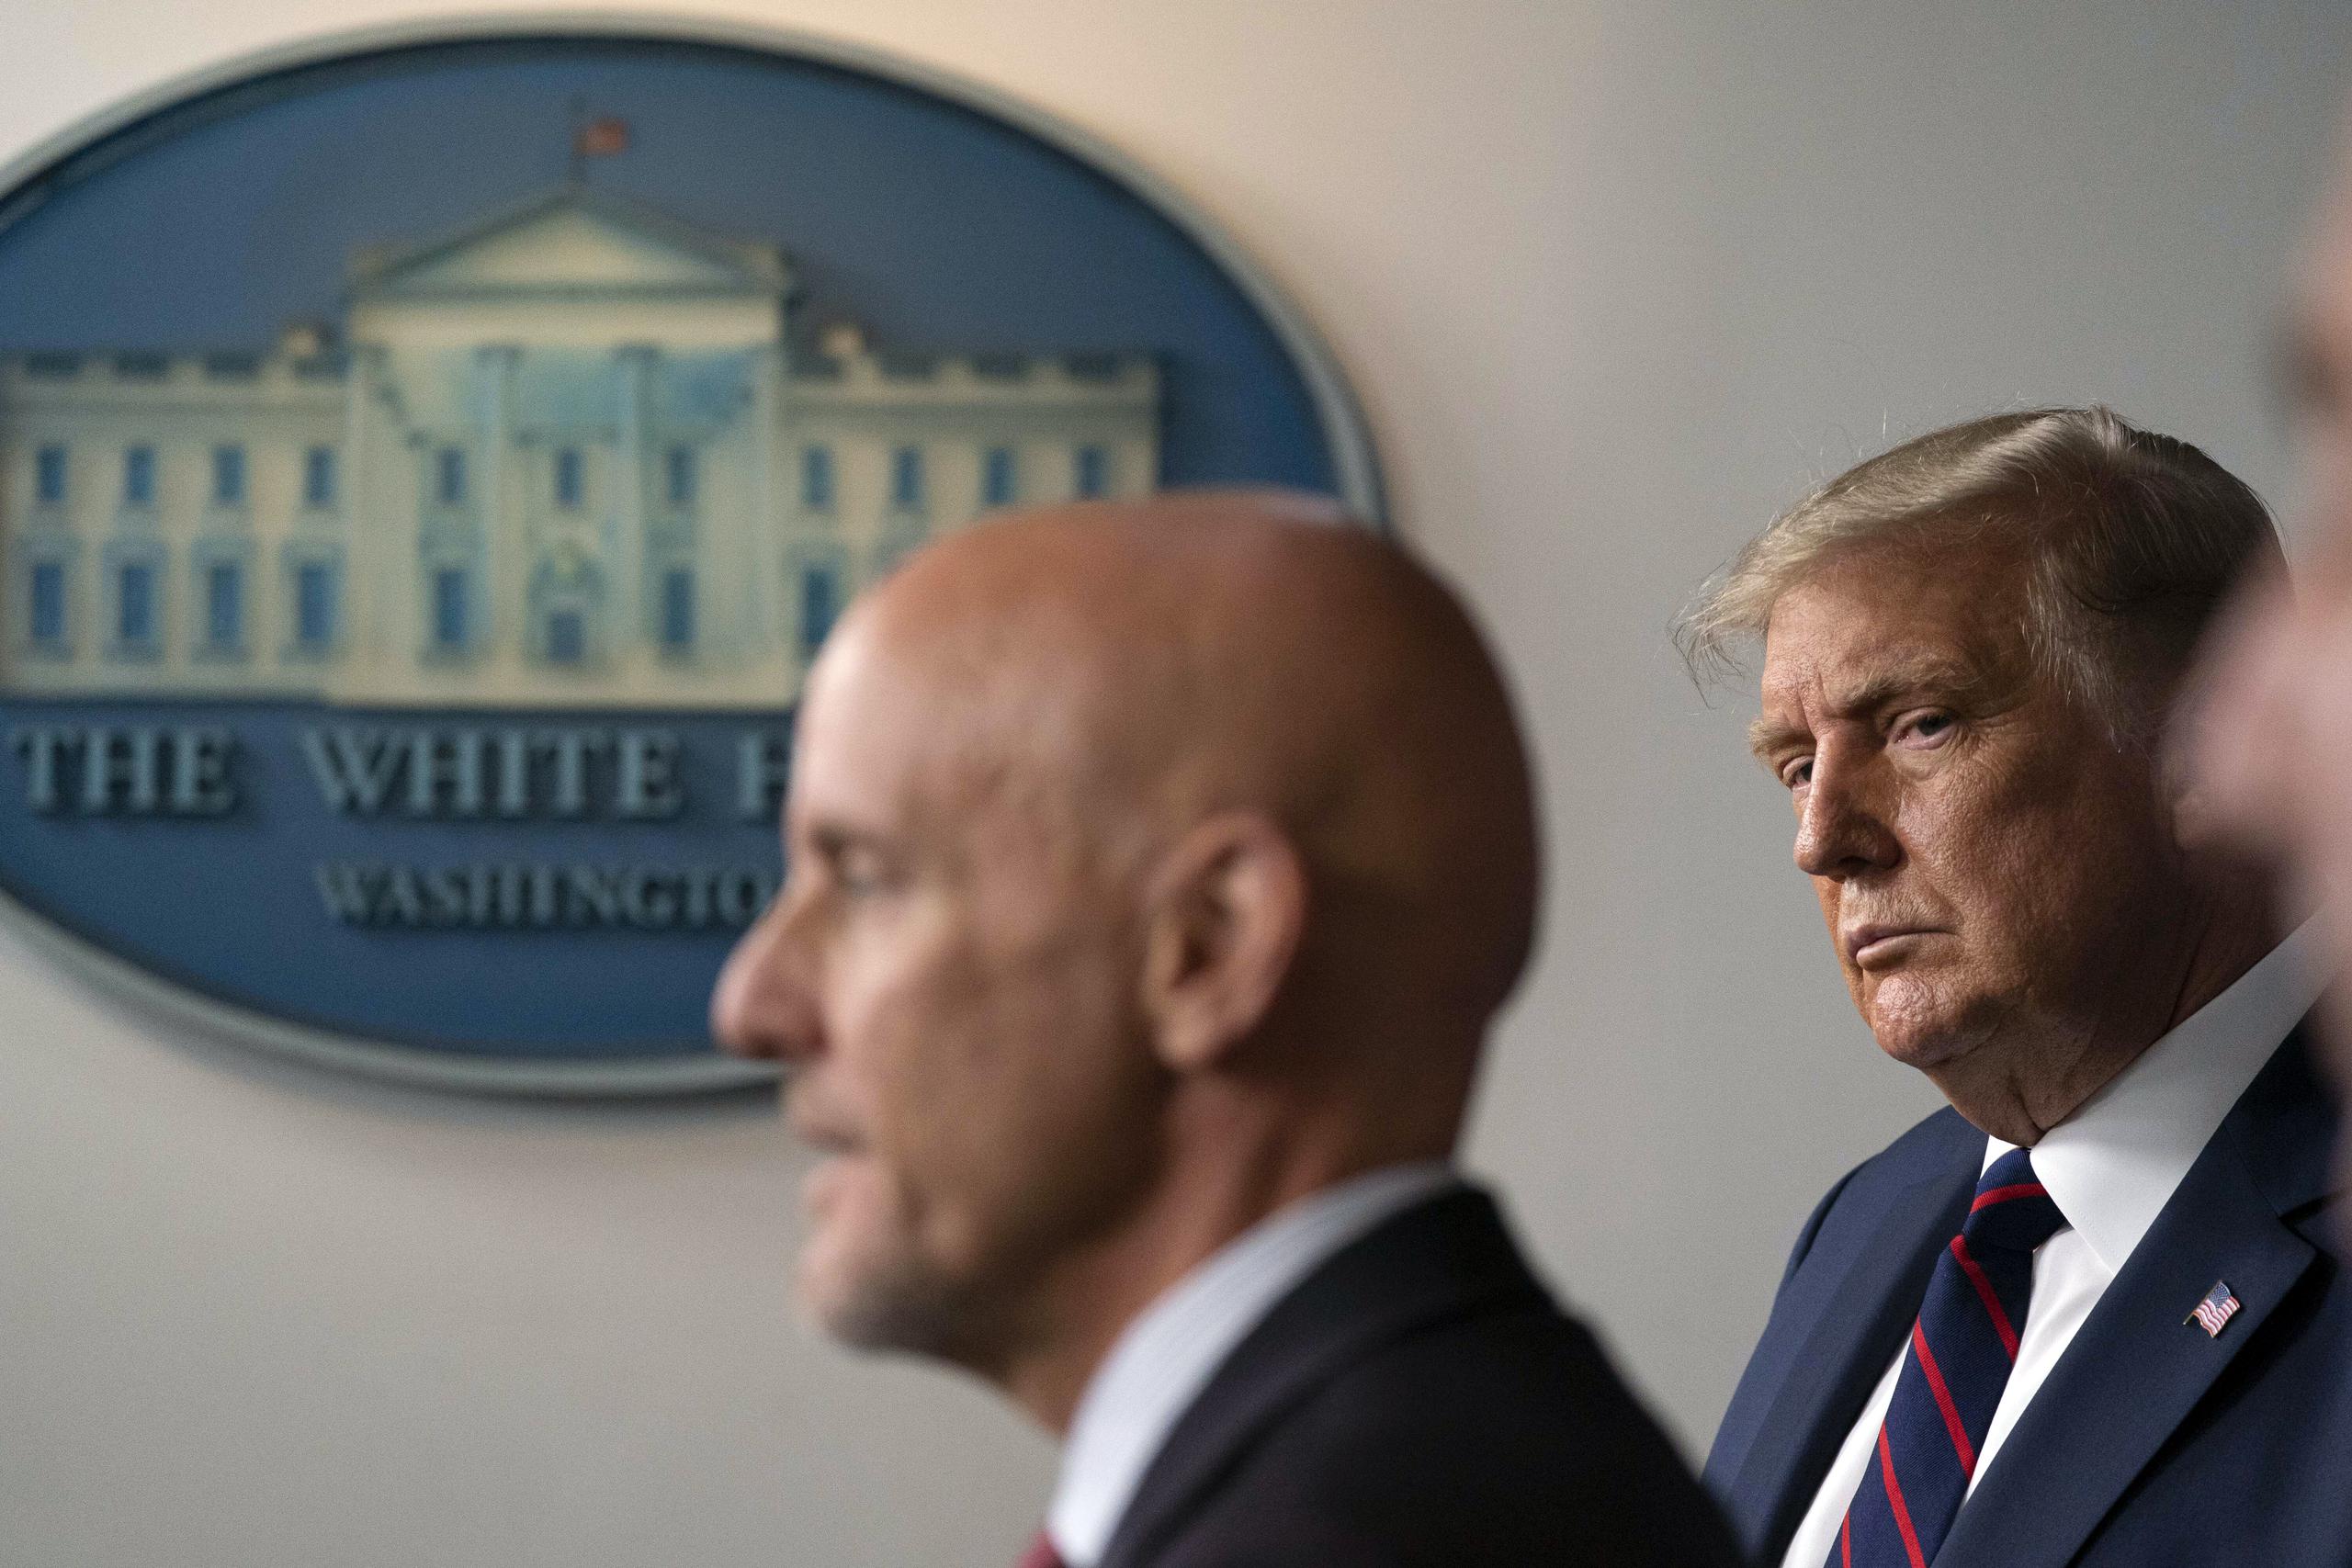 El presidente Donald Trump observa al jefe de la FDA, Stephen Hahn, durante una conferencia de prensa en la Casa Blanca el pasado agosto.